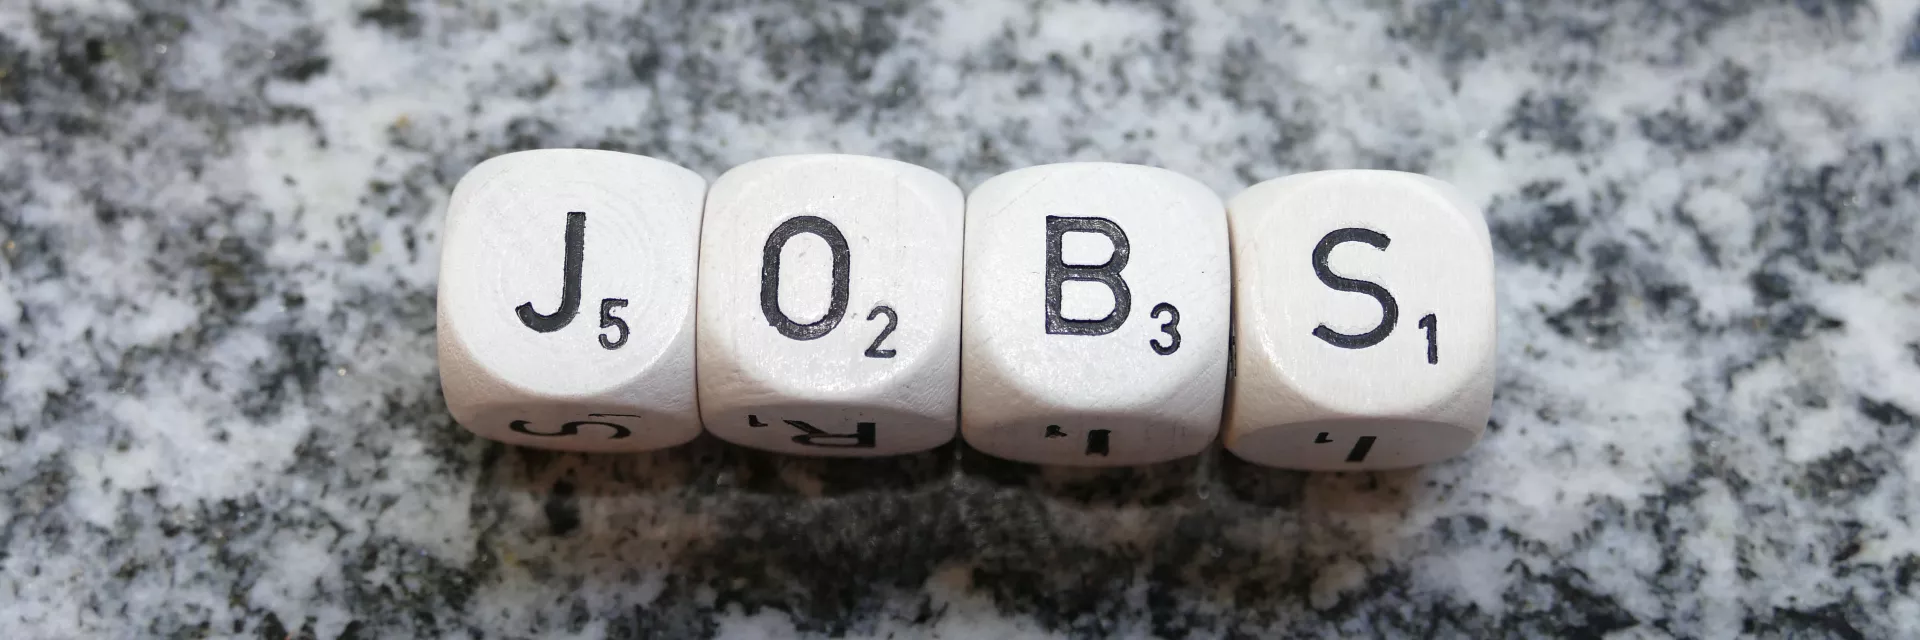 auf einer Granitplatte liegen 4 Buchstaben-Würfel und bilden das Wort "JOBS"